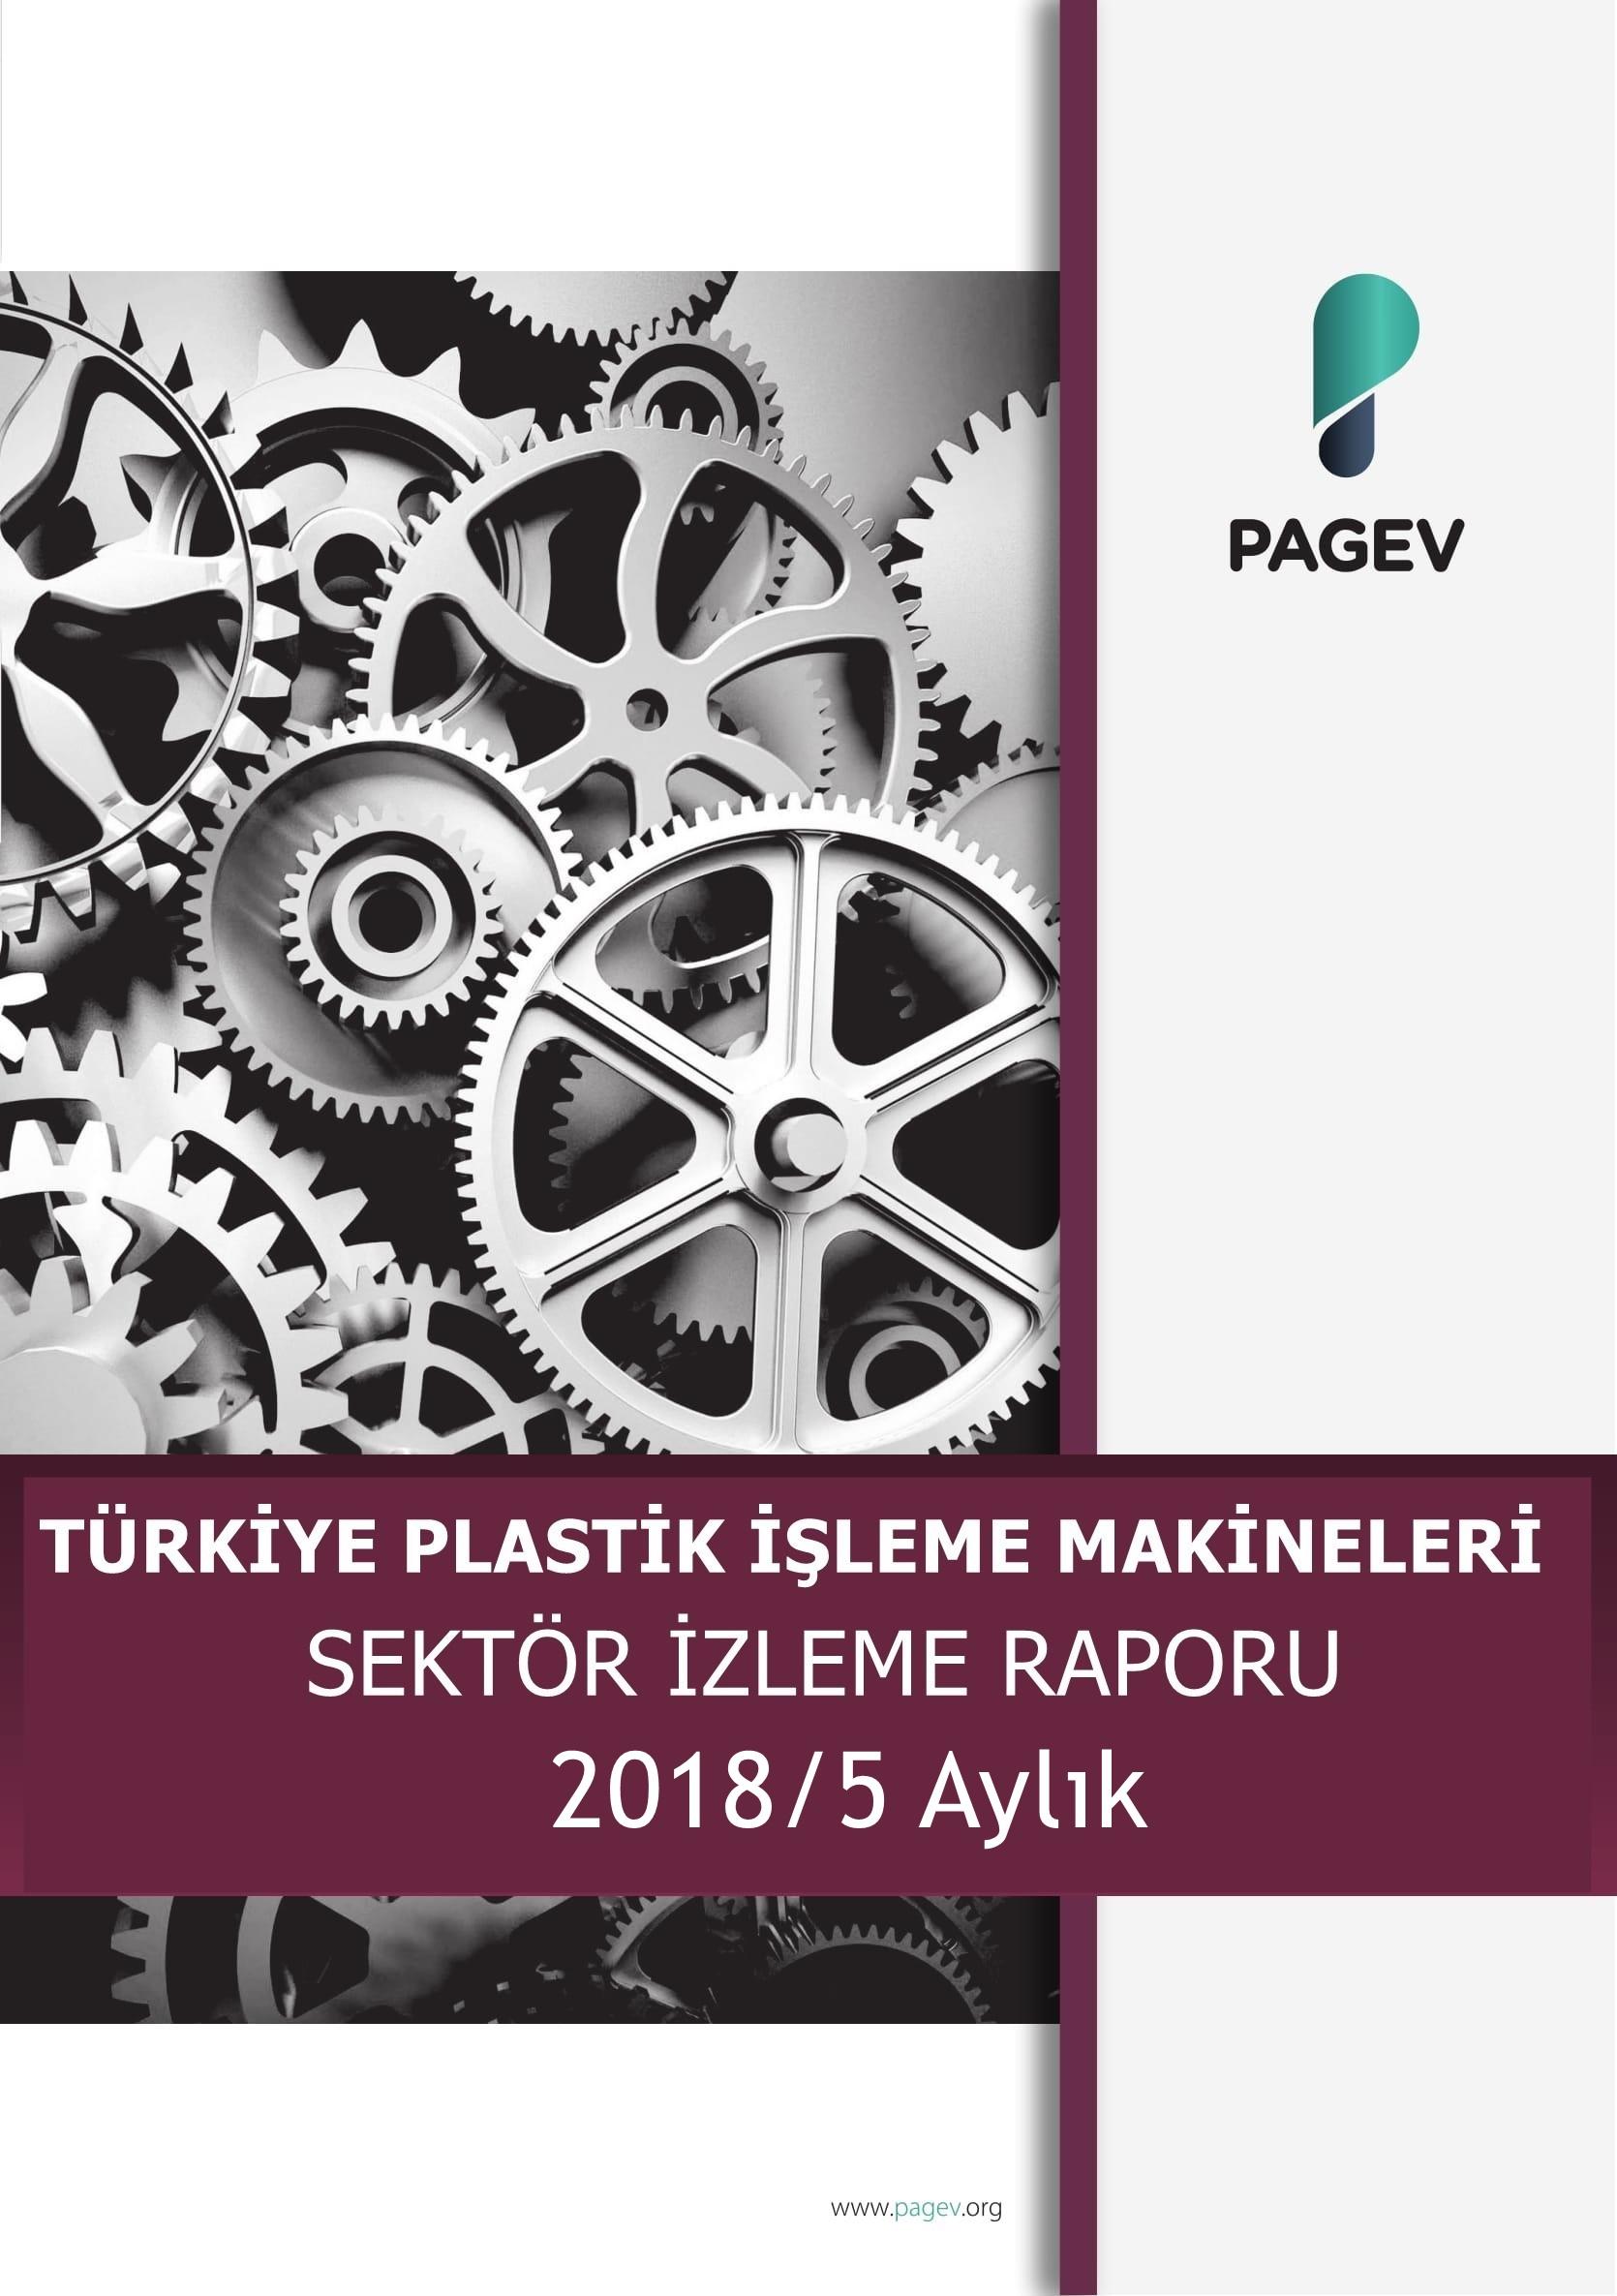 Türkiye Plastik İşleme Makineleri Sektör İzleme Raporu 2017/5 Aylık